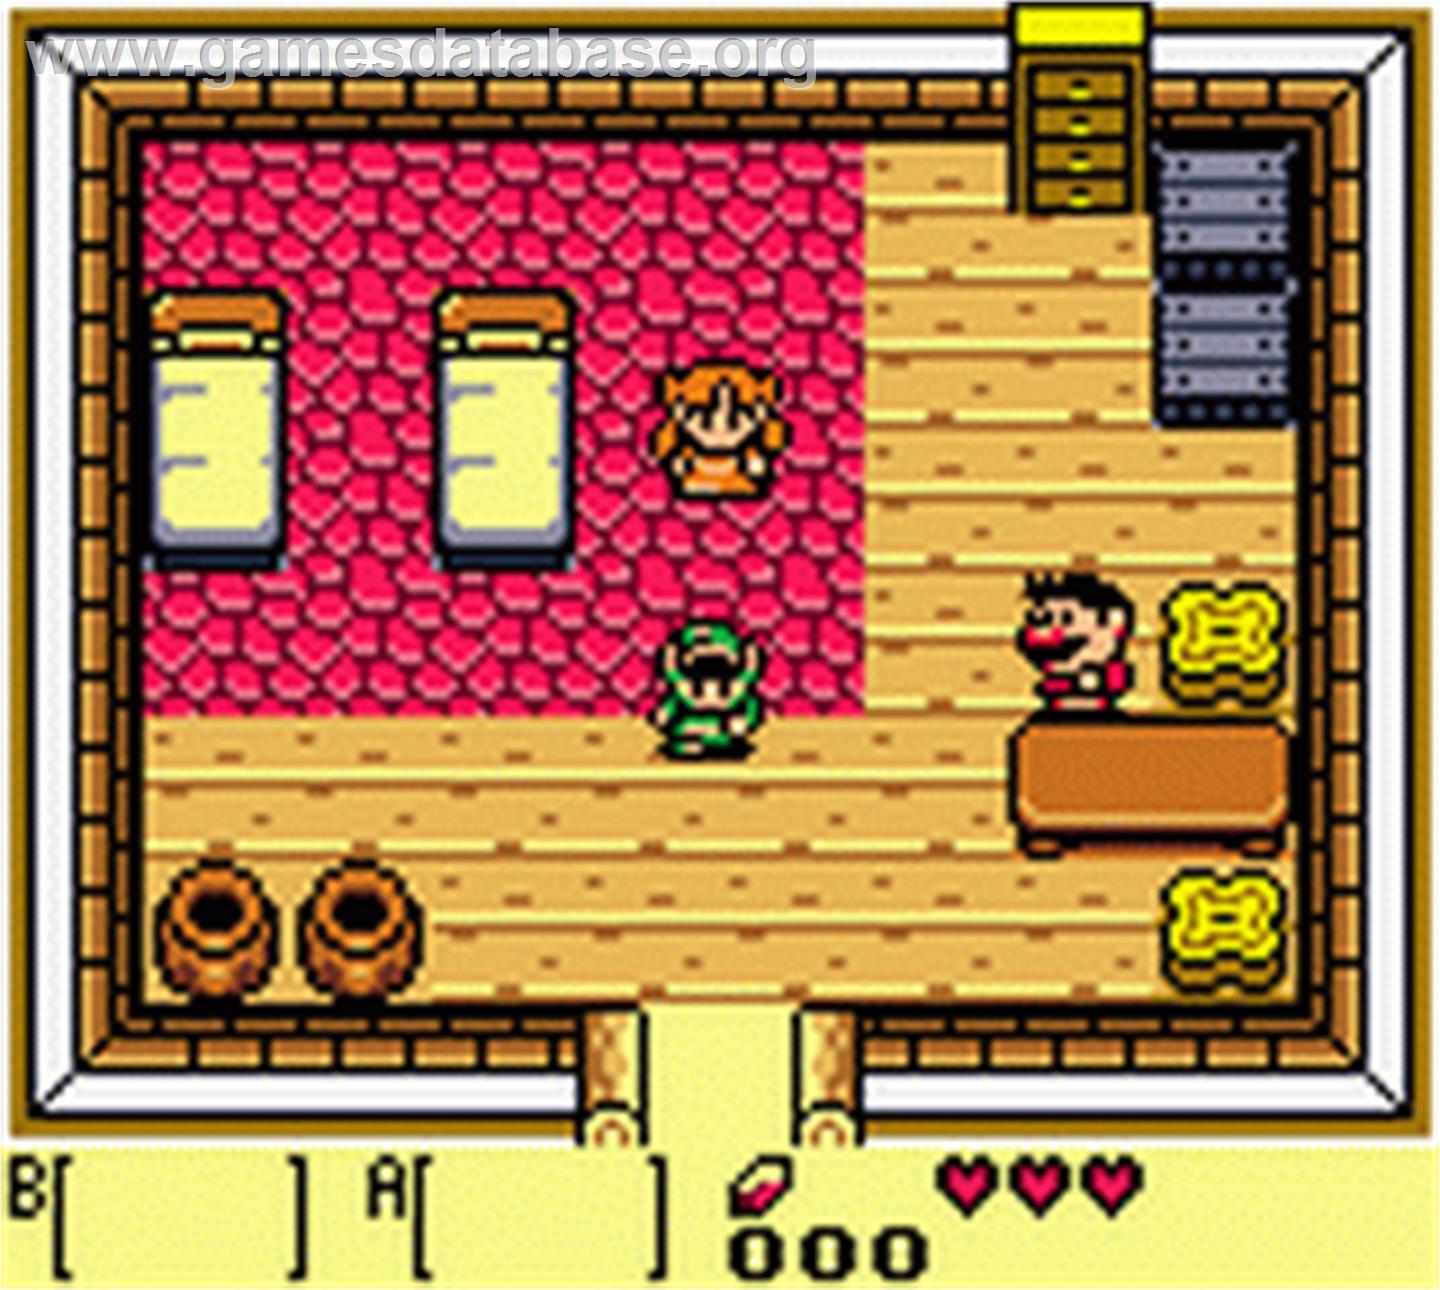 The Legend of Zelda Link's Awakening game Boy Color 